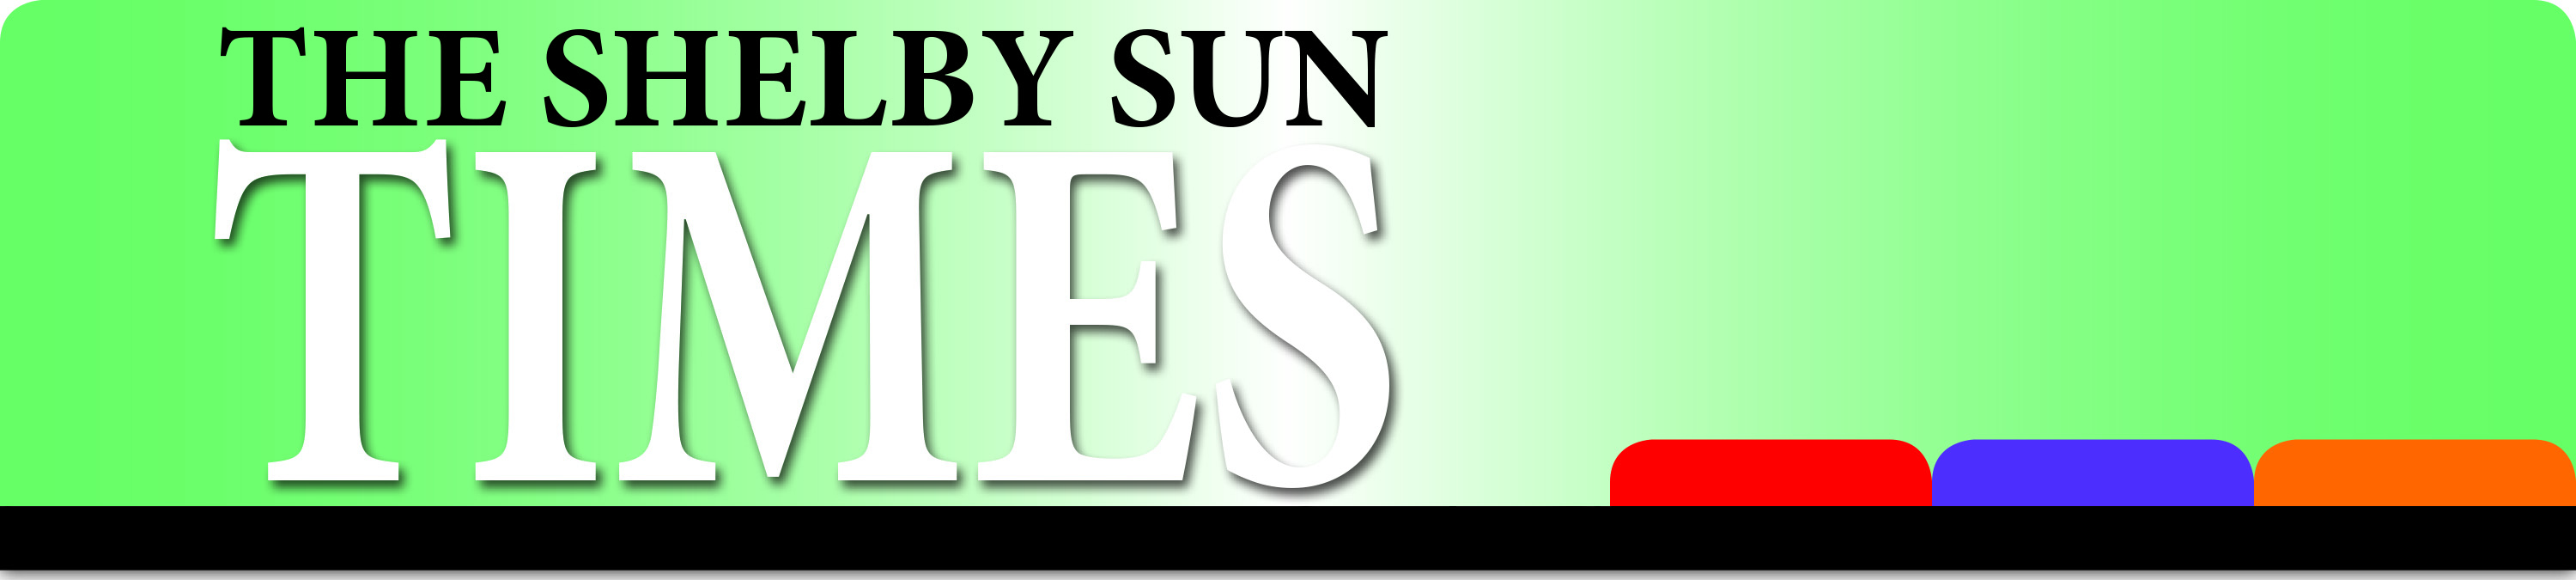 shelby-sun-header